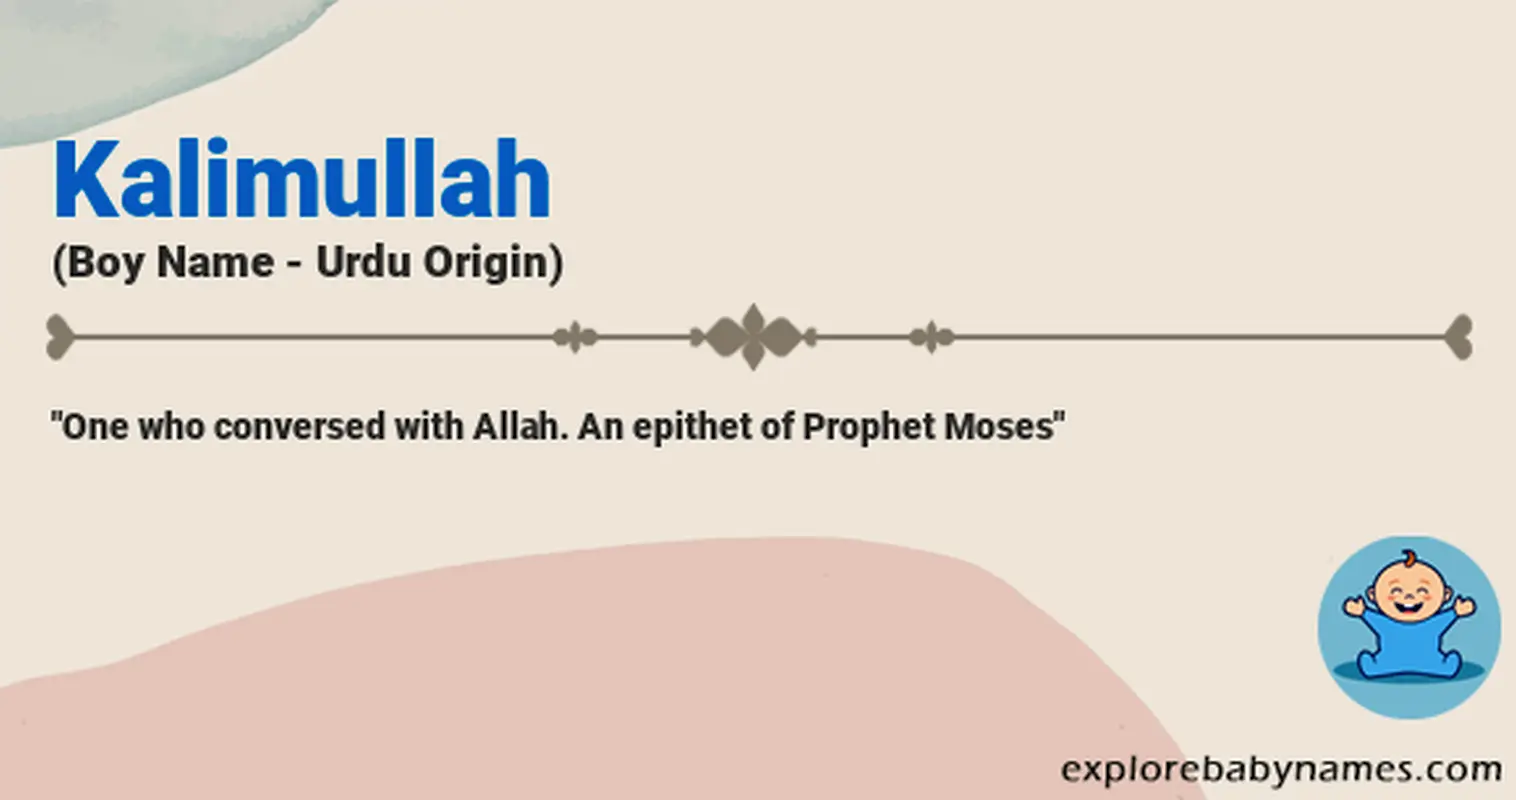 Meaning of Kalimullah